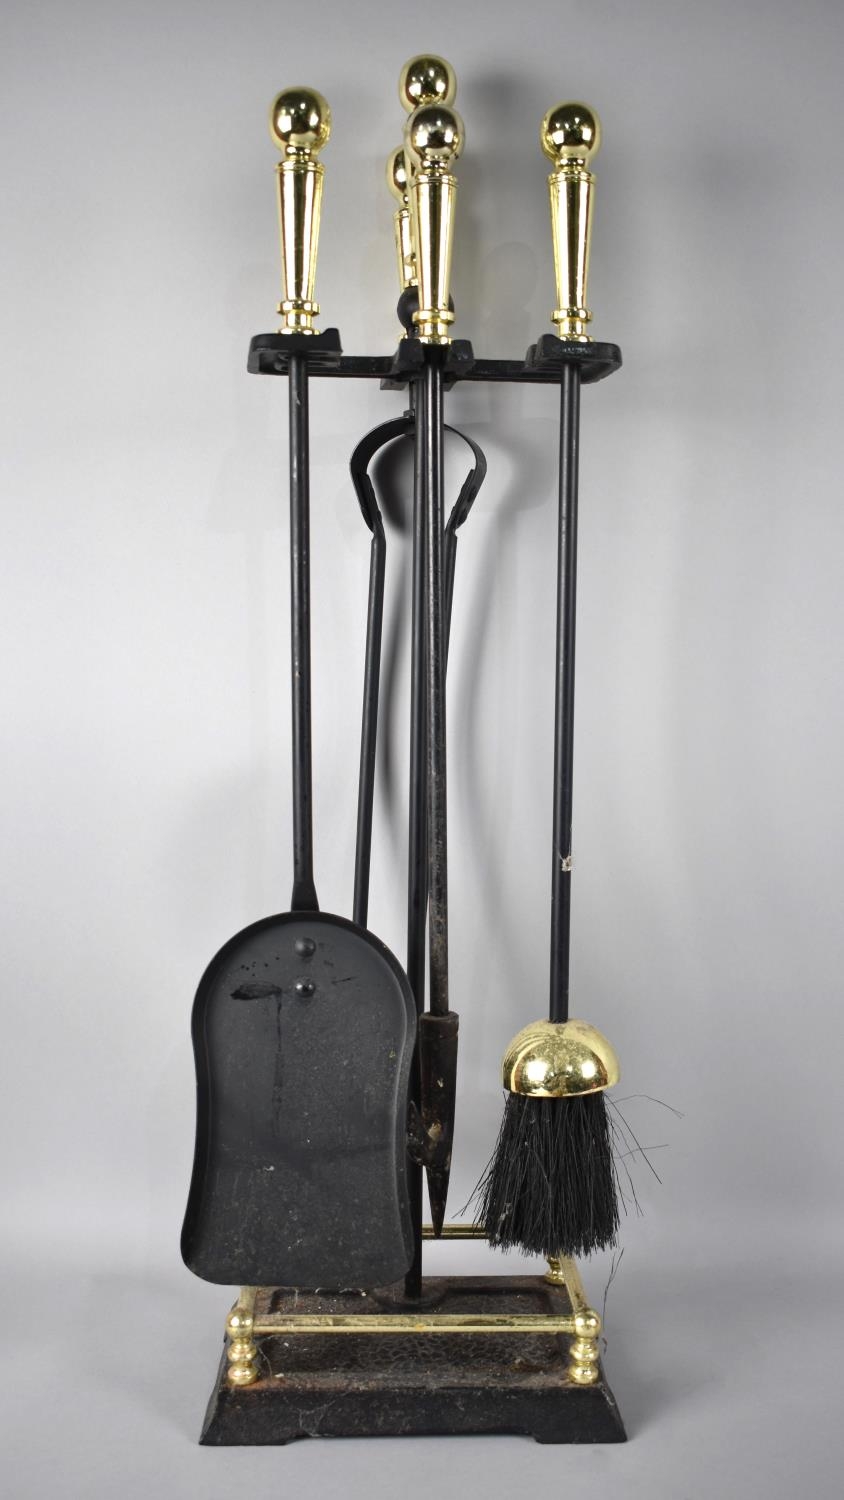 A Modern Brass Mounted Iron Long Handled Fire Companion Set, 65cms High